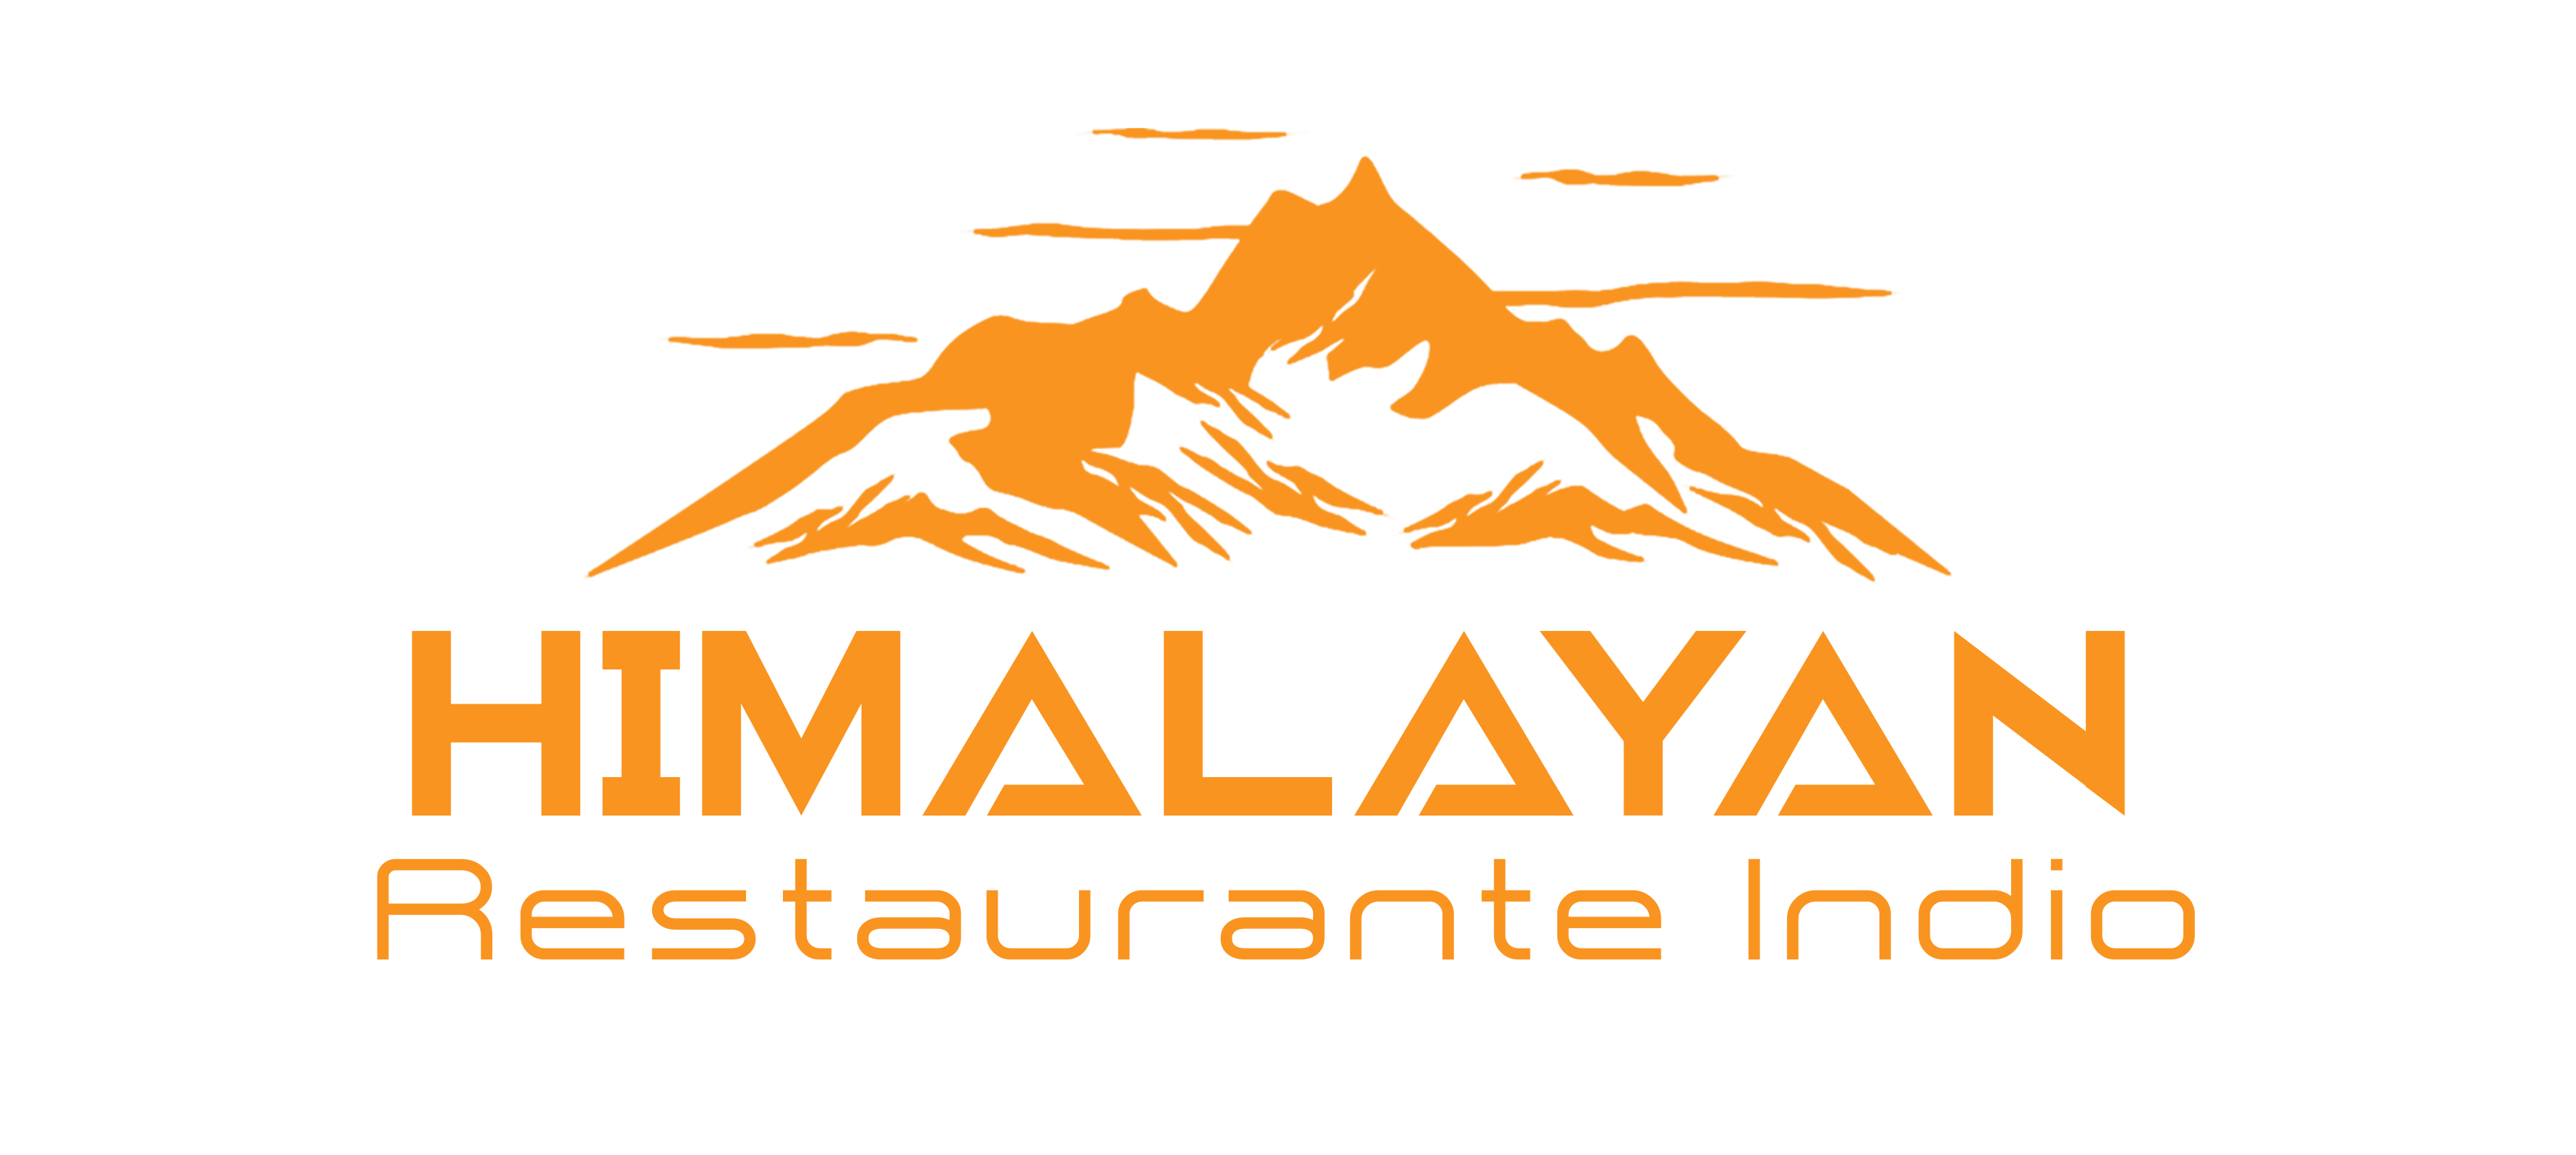 Himalayan Indian Restaurant